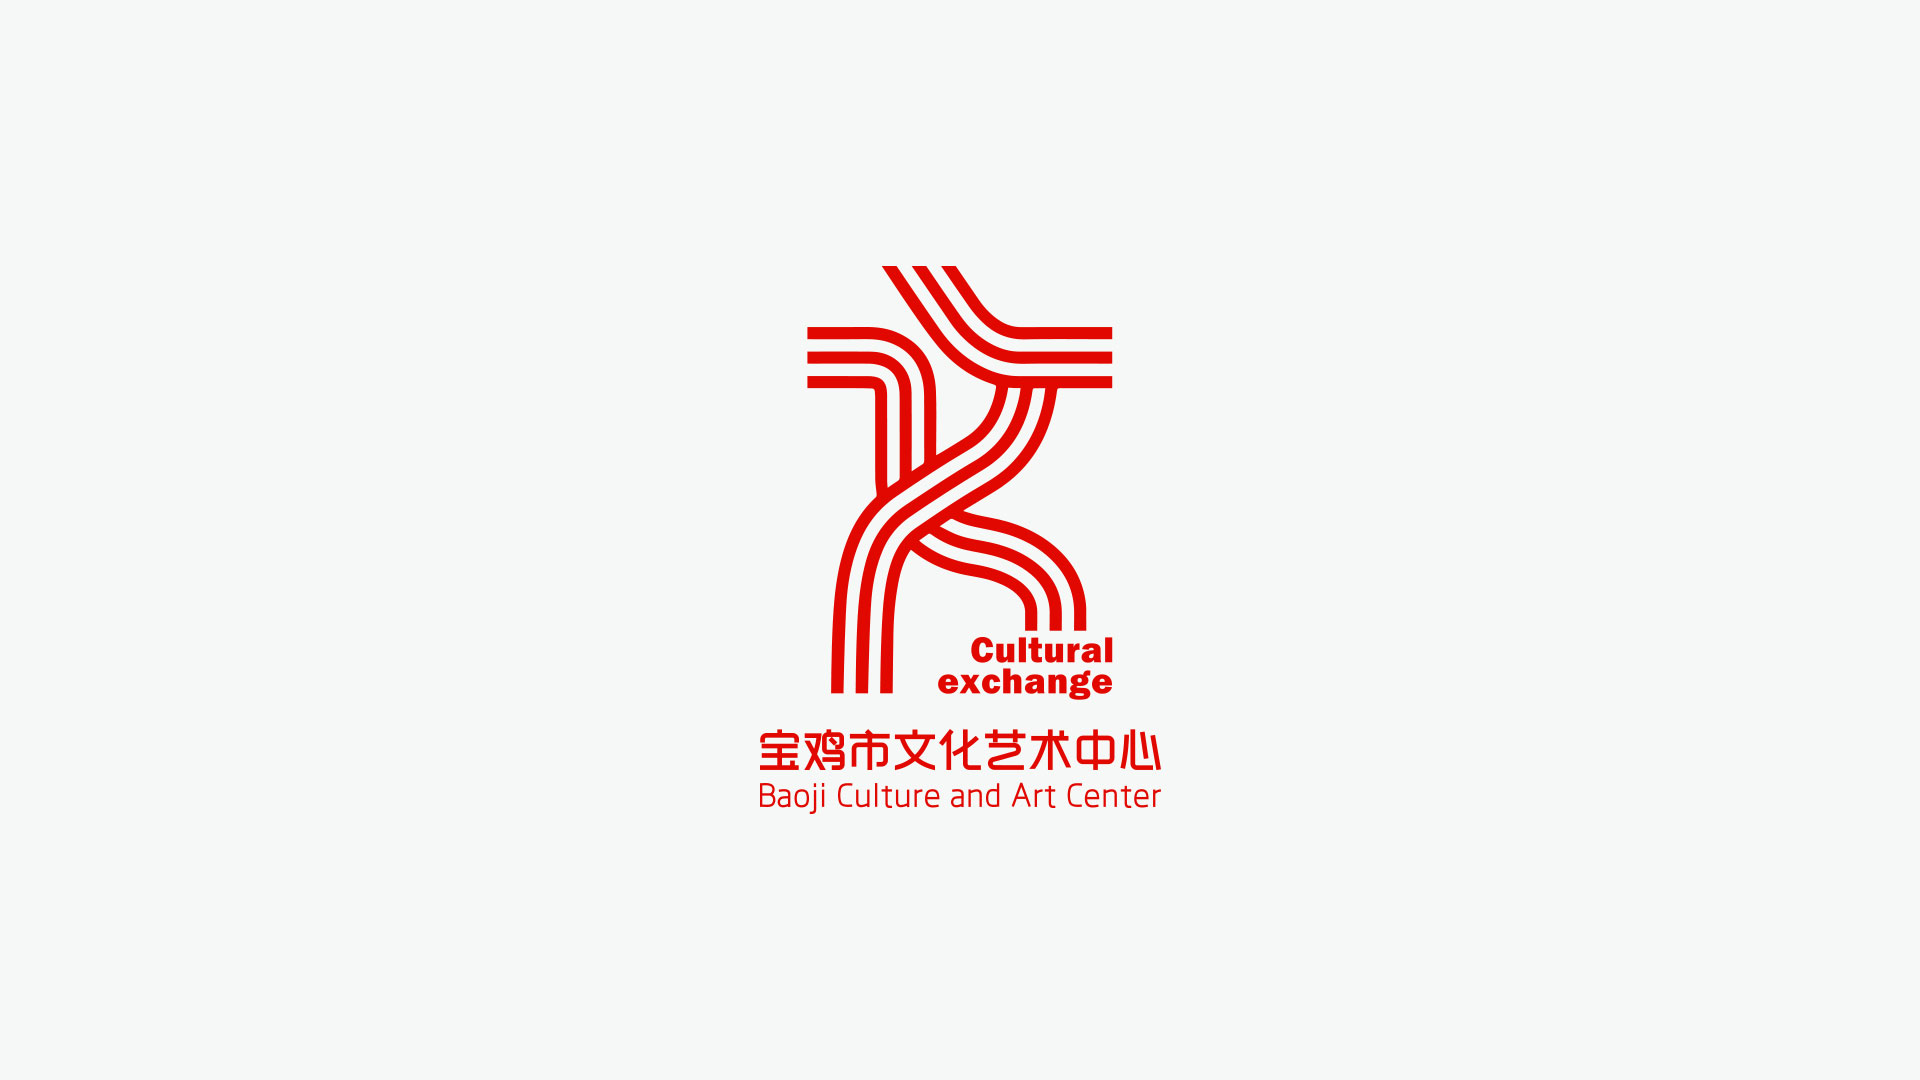 工艺美术馆logo图片